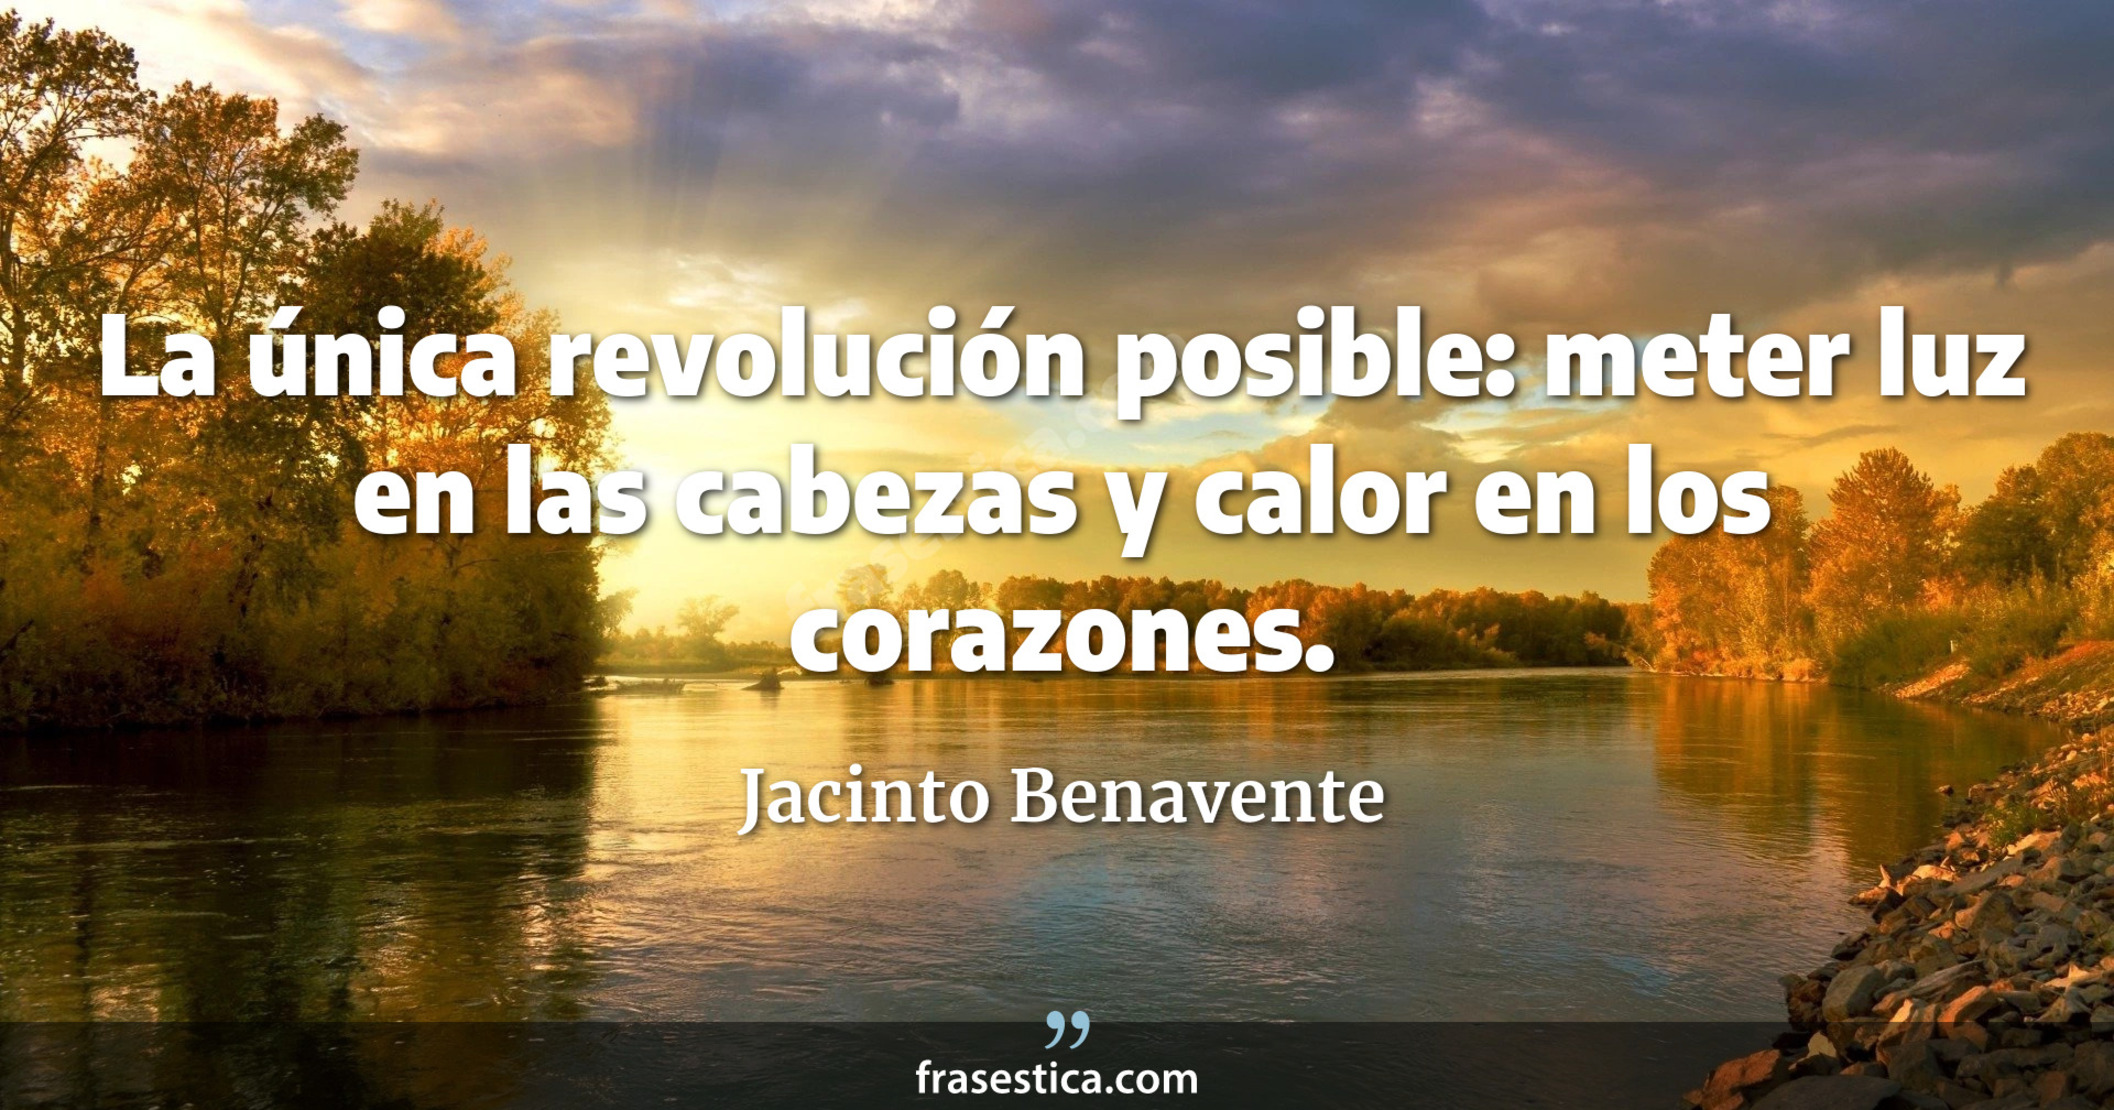 La única revolución posible: meter luz en las cabezas y calor en los corazones. - Jacinto Benavente